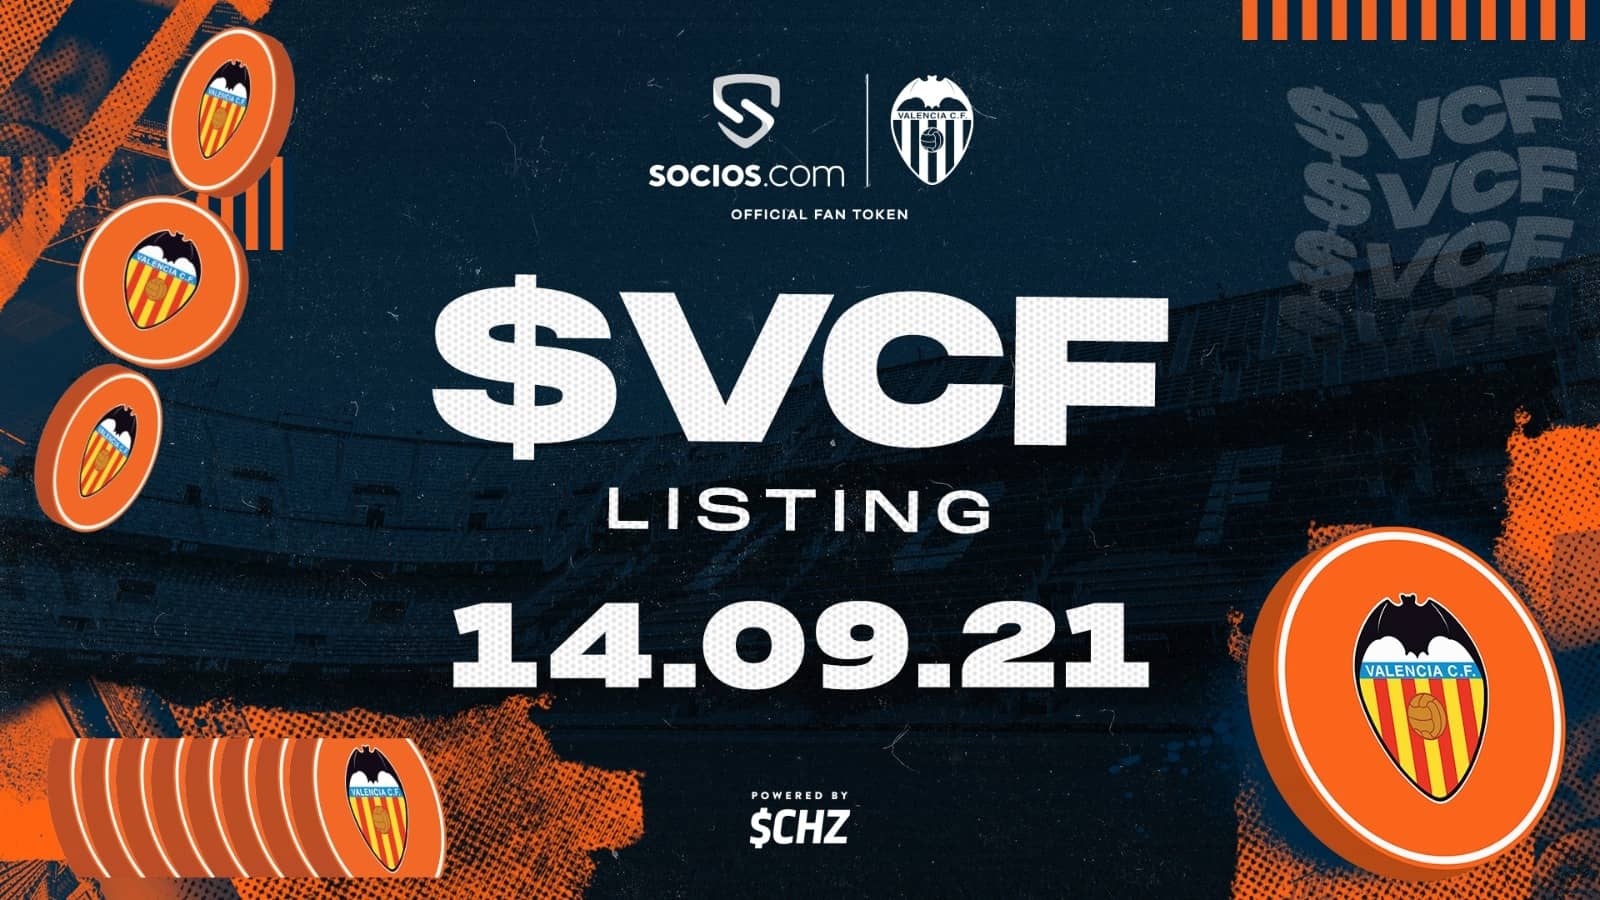 Los Fan Token de Valencia CF ($VCF) - Fan Token